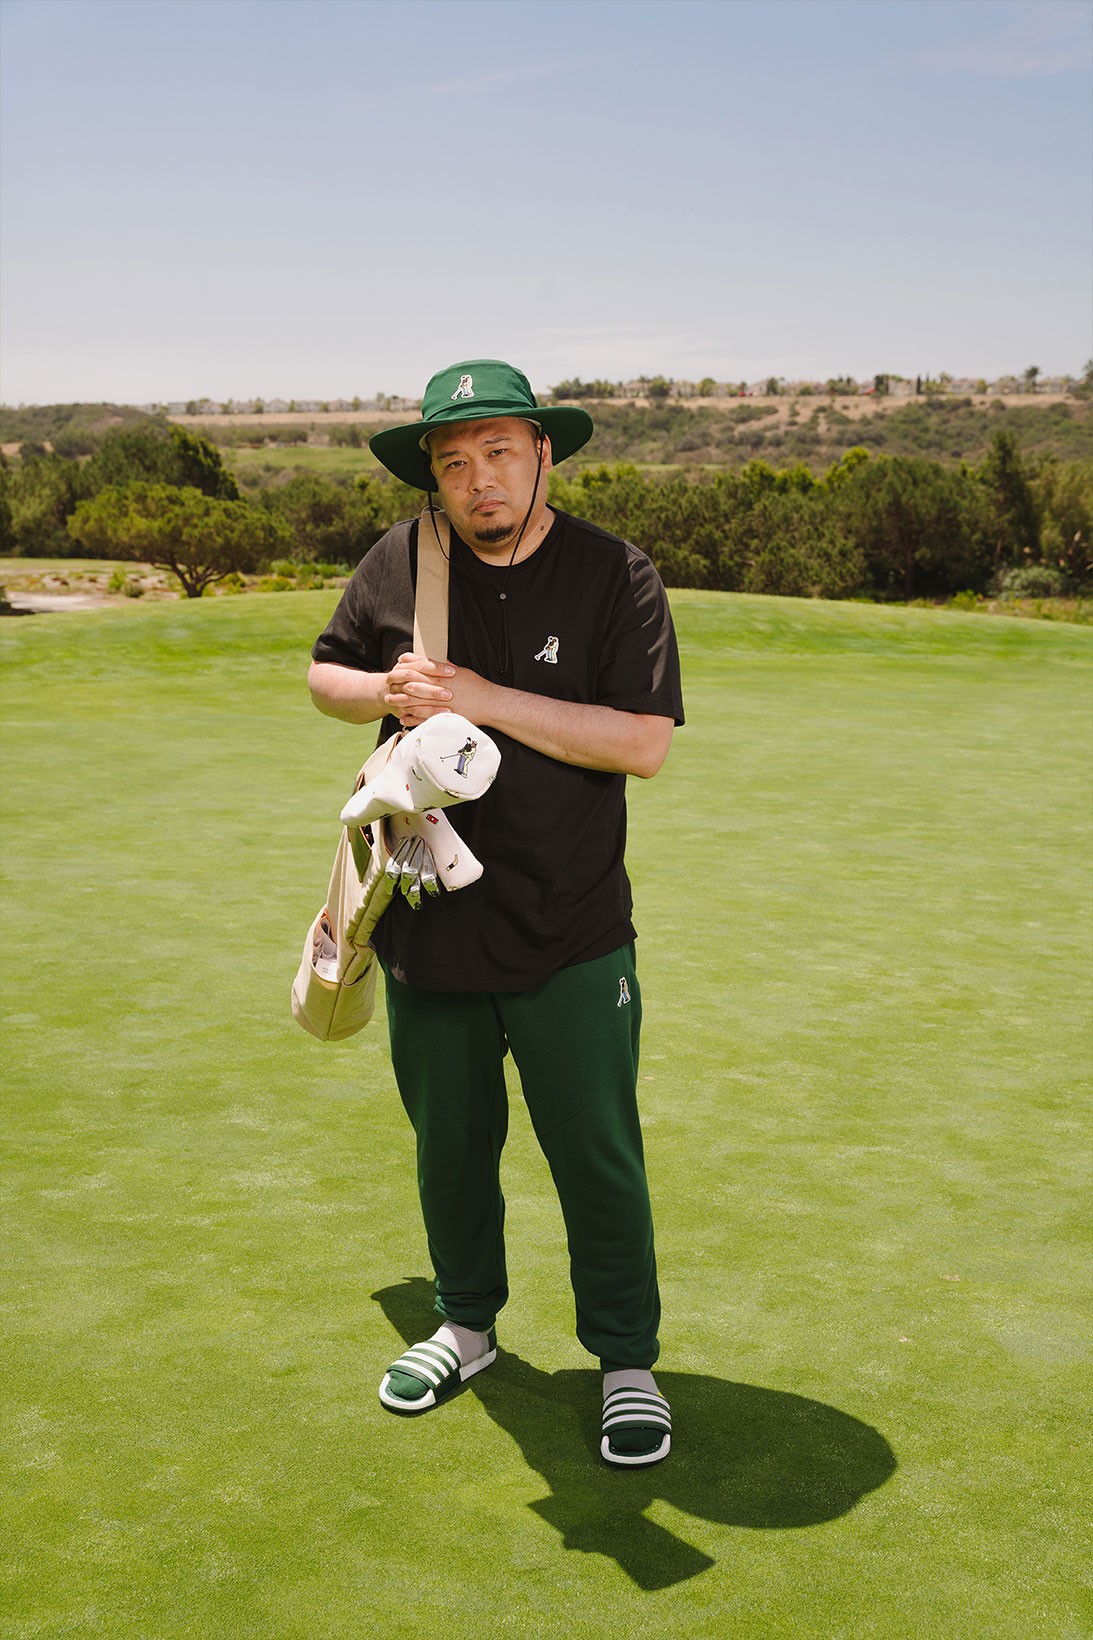 adidas выпустил гольф-коллекцию в стиле комедии «Счастливчик Гилмор» (фото 7)